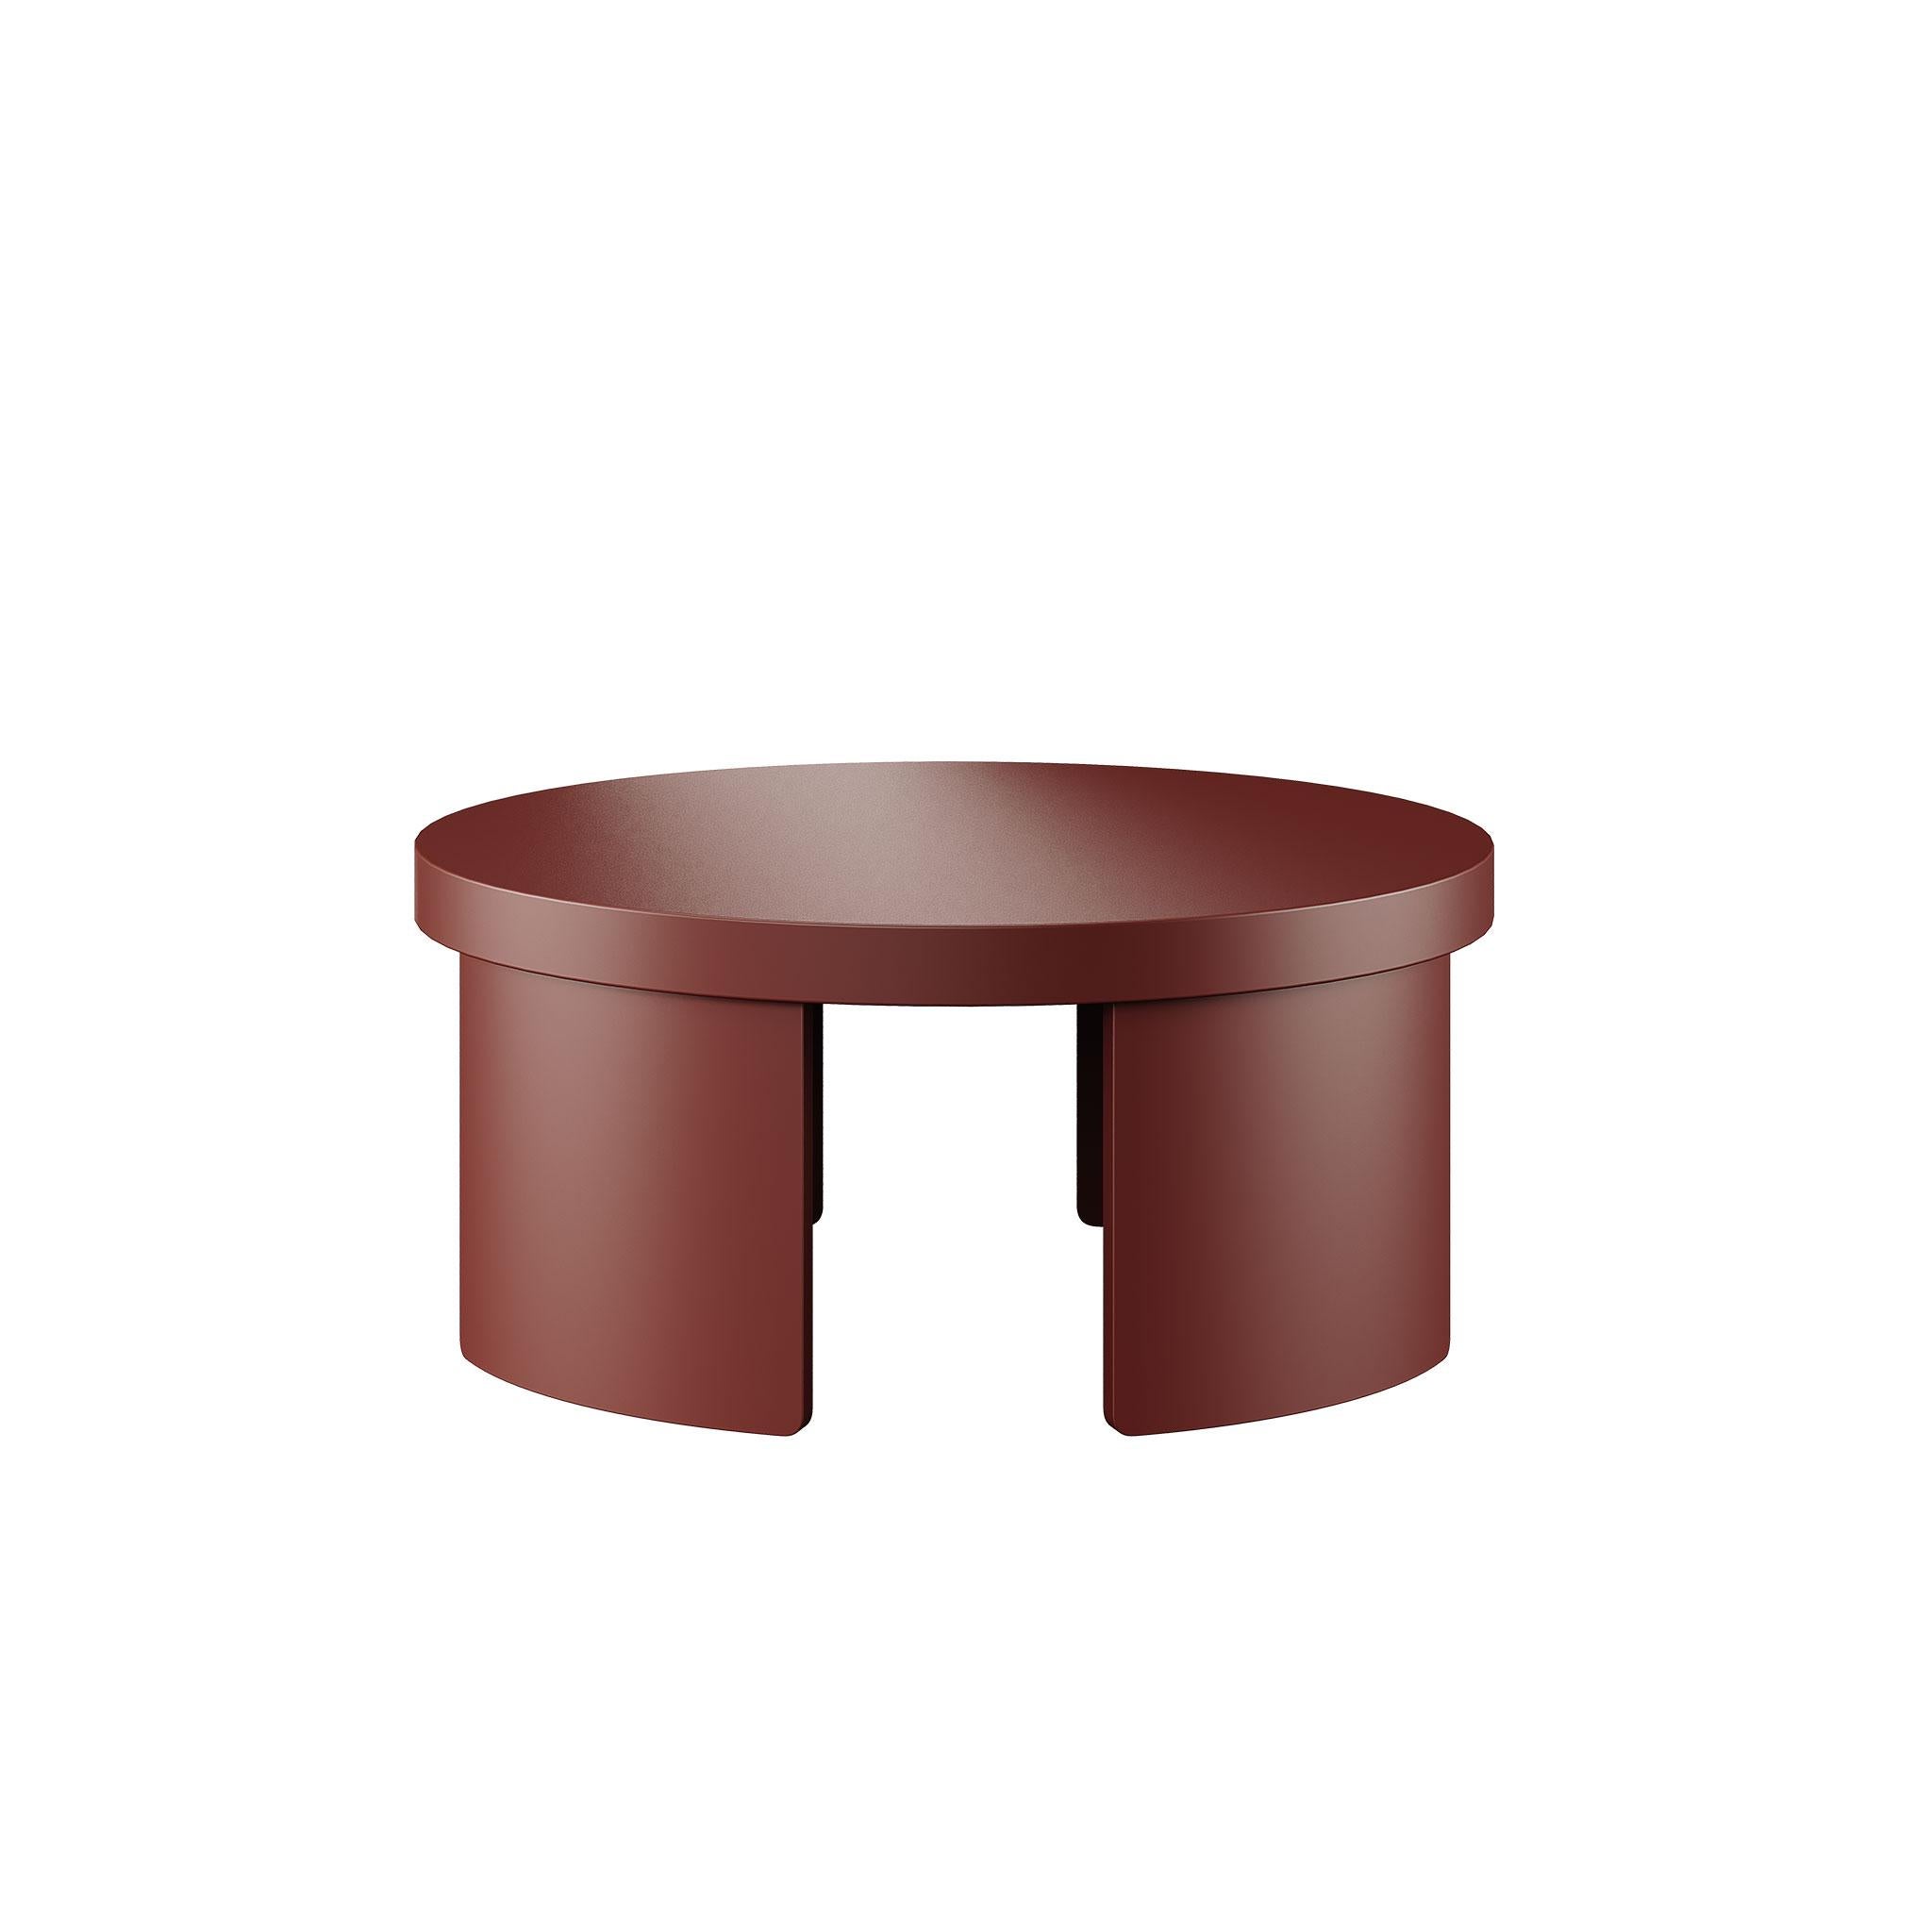 Wir stellen Ihnen unseren modernen runden Mitteltisch in einer faszinierenden rotbraun lackierten Holzoberfläche vor.
Dieses moderne Möbelstück verbindet Form und Funktion und verleiht Ihrem Wohnraum einen Hauch von Raffinesse.
Die mit Präzision